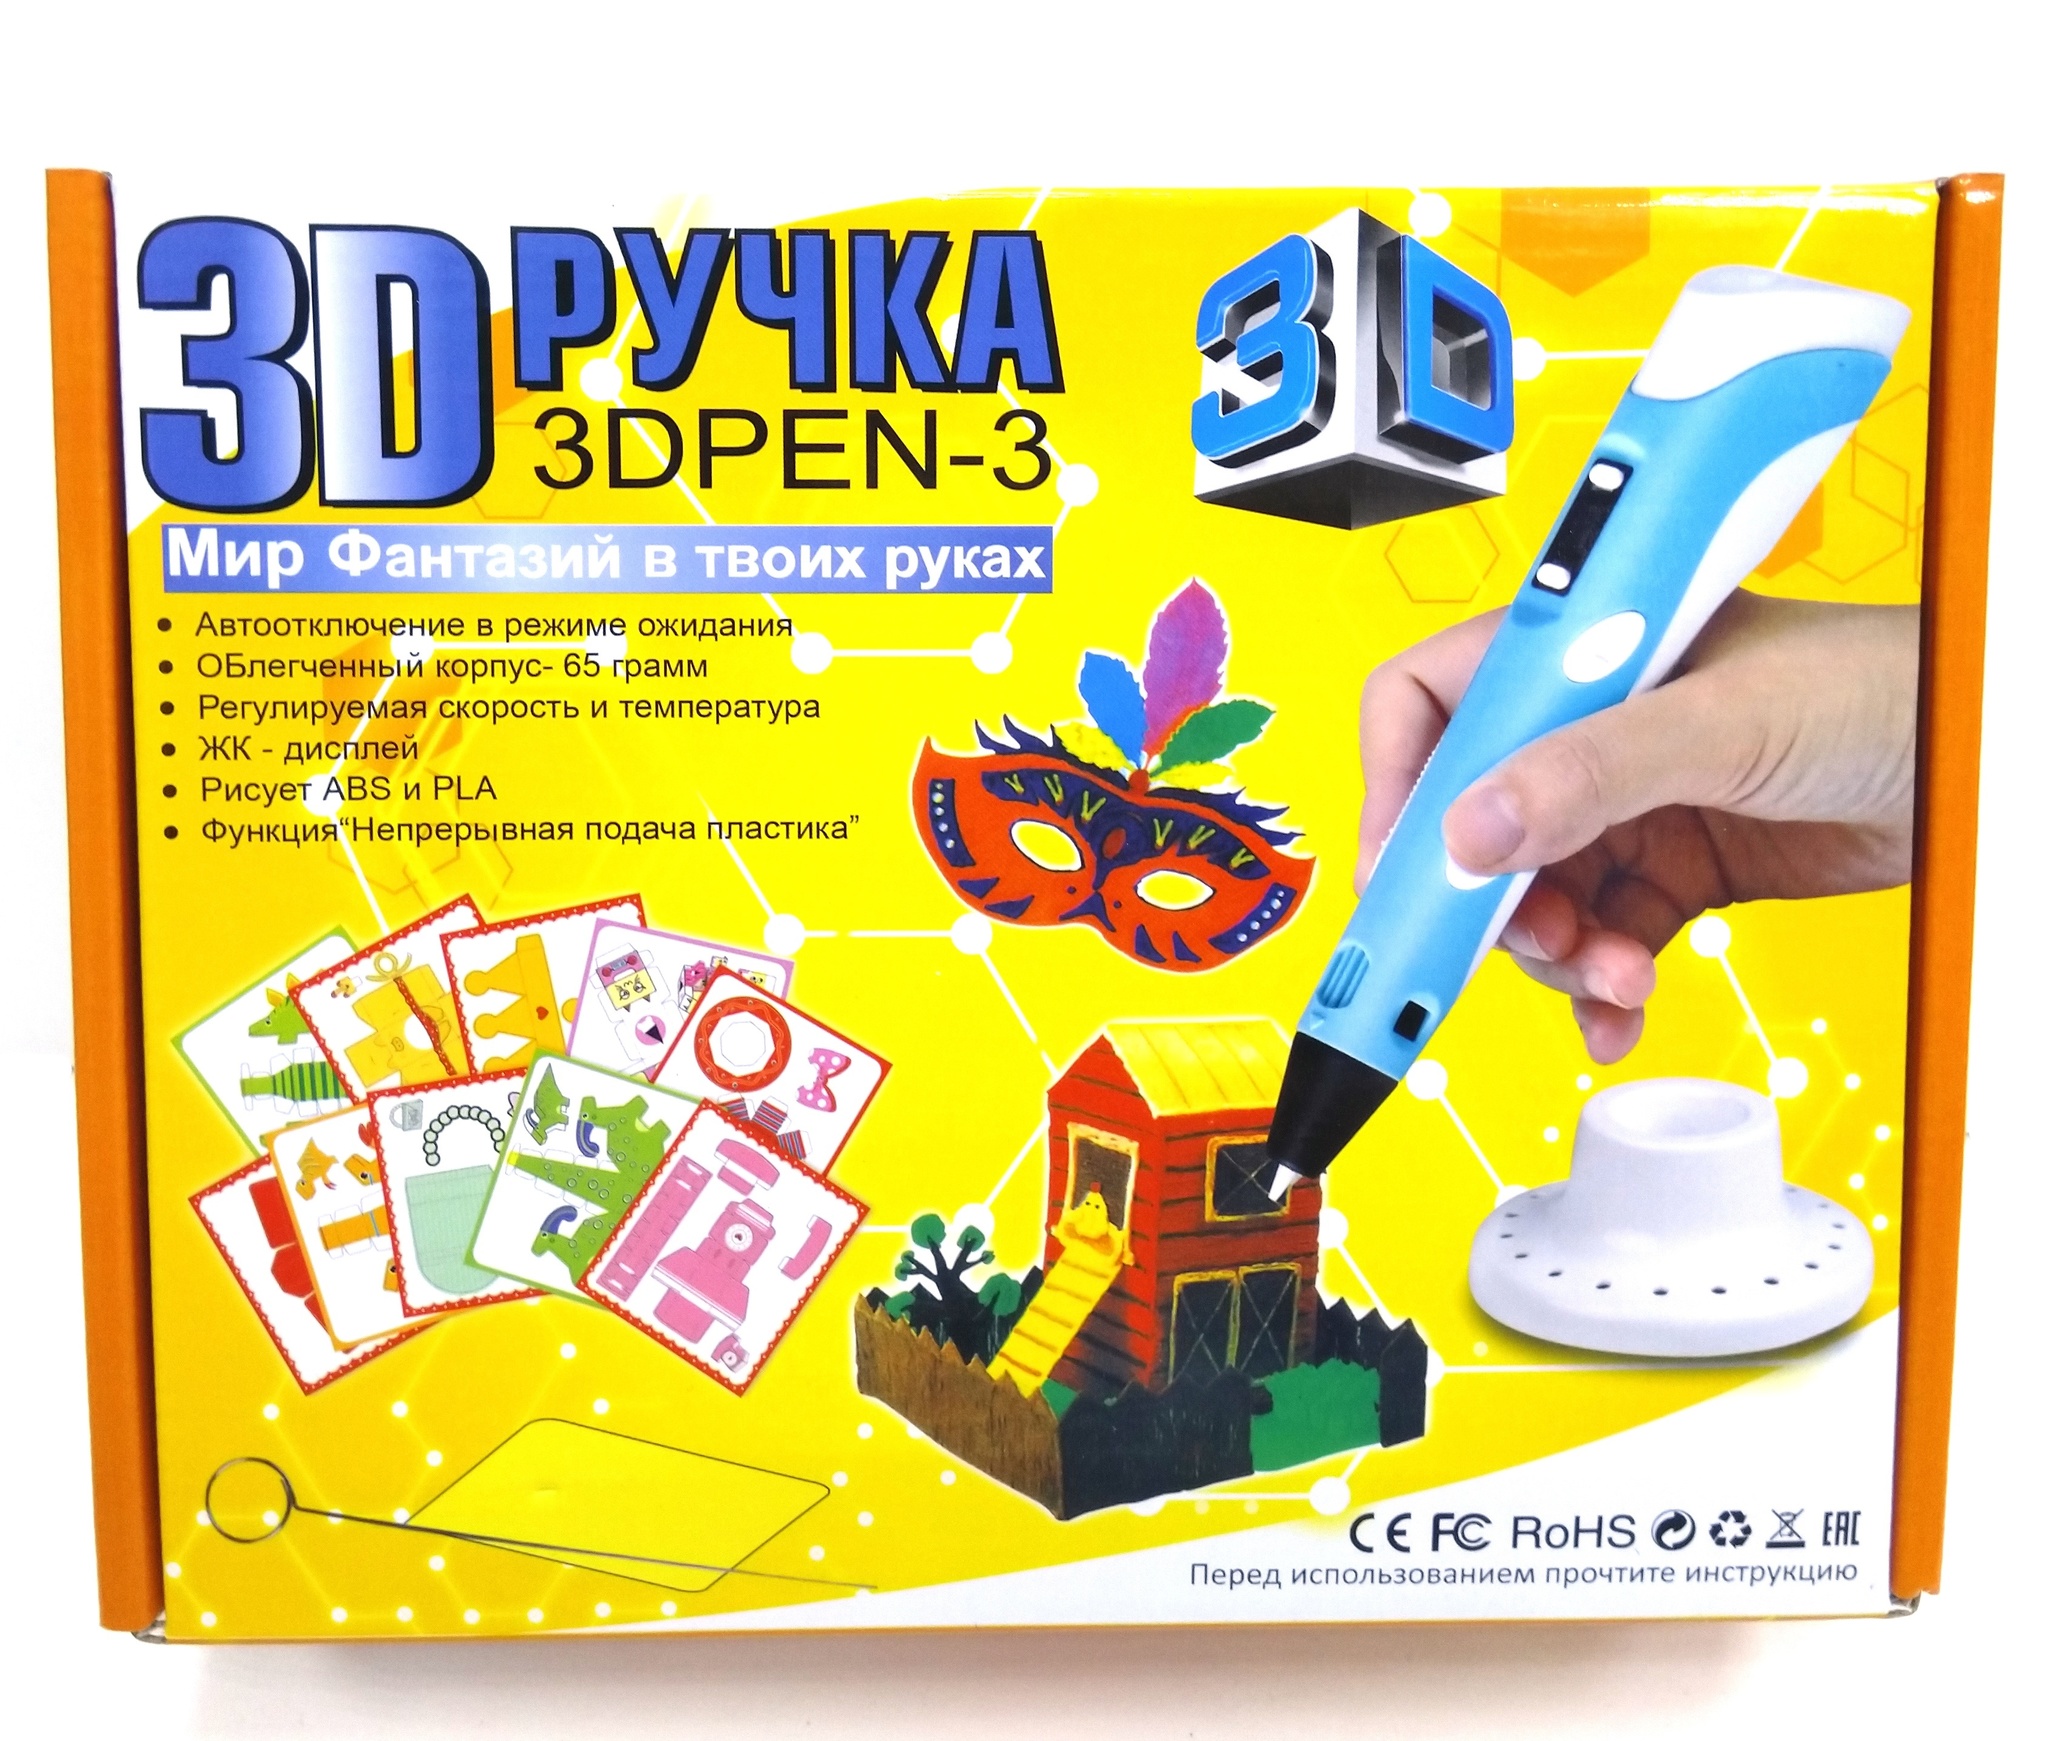 3D Ручка - 3 Мир Фантазий